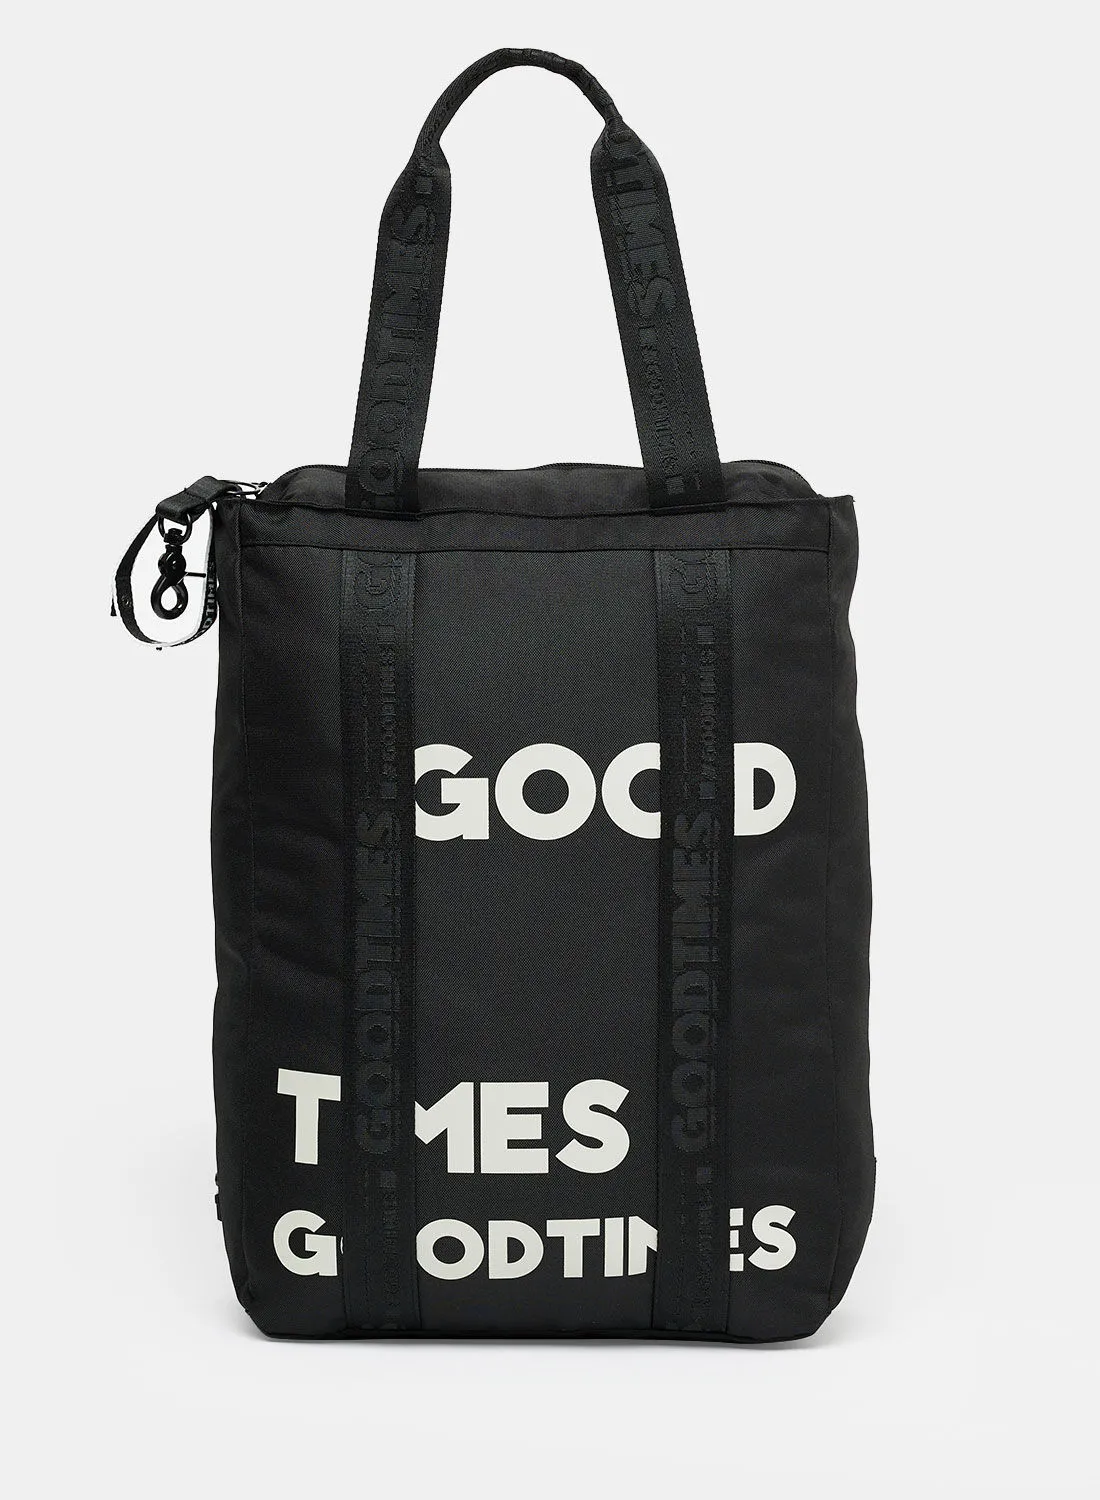 Goodtimes Shoreditch Tote Bag Black